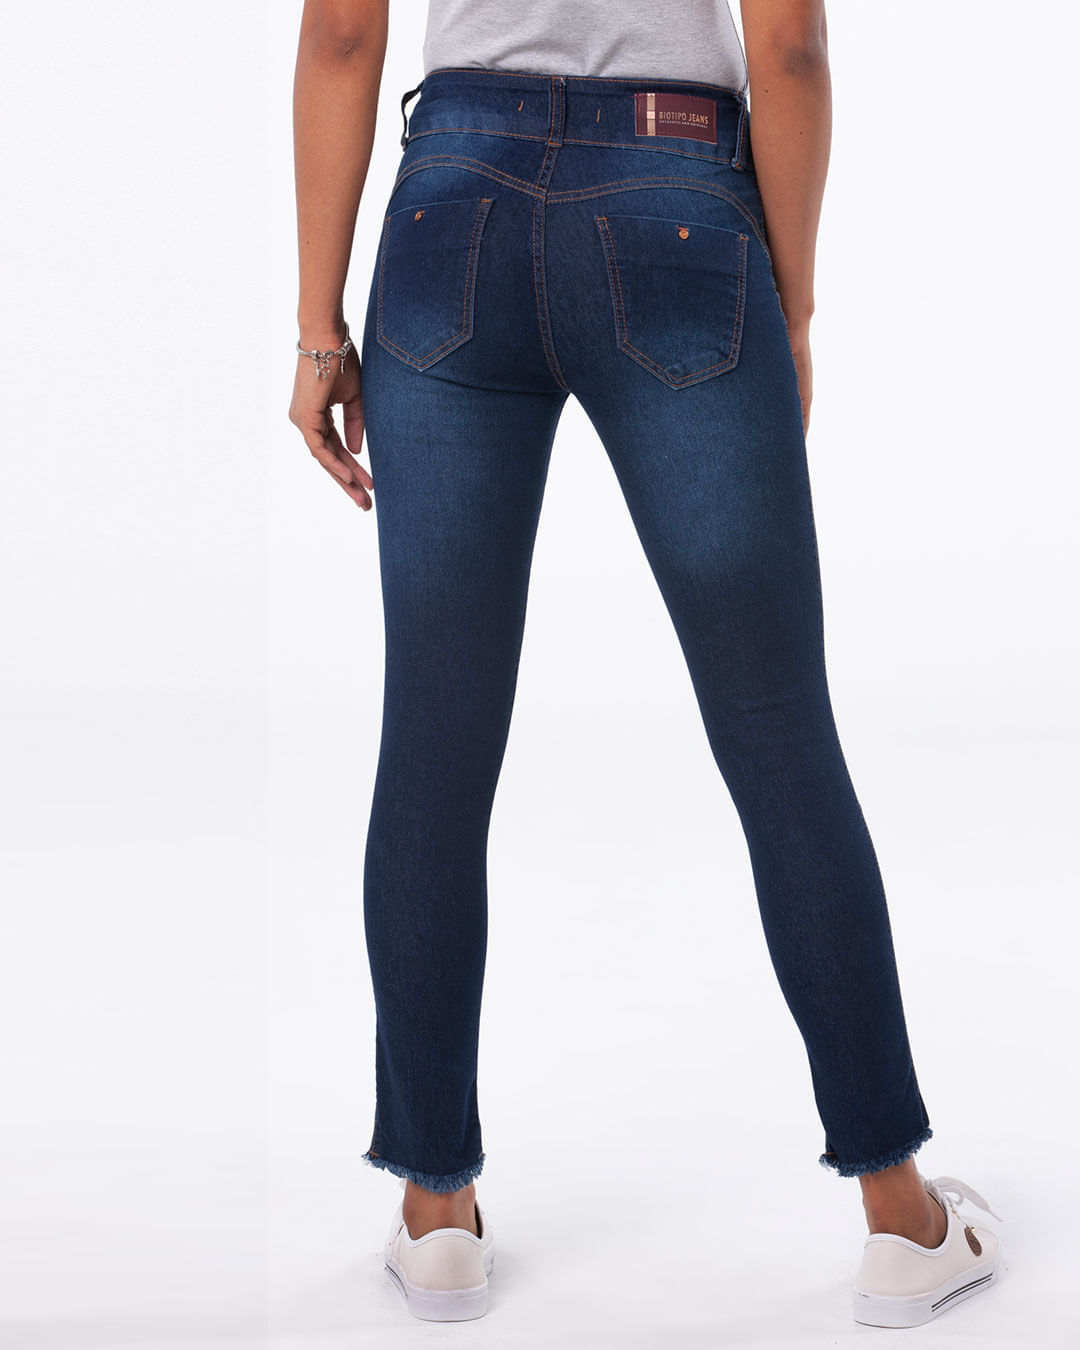 Calca-Jeans-Feminina-Cigarrete-Mullet-Biotipo-Azul-Escuro